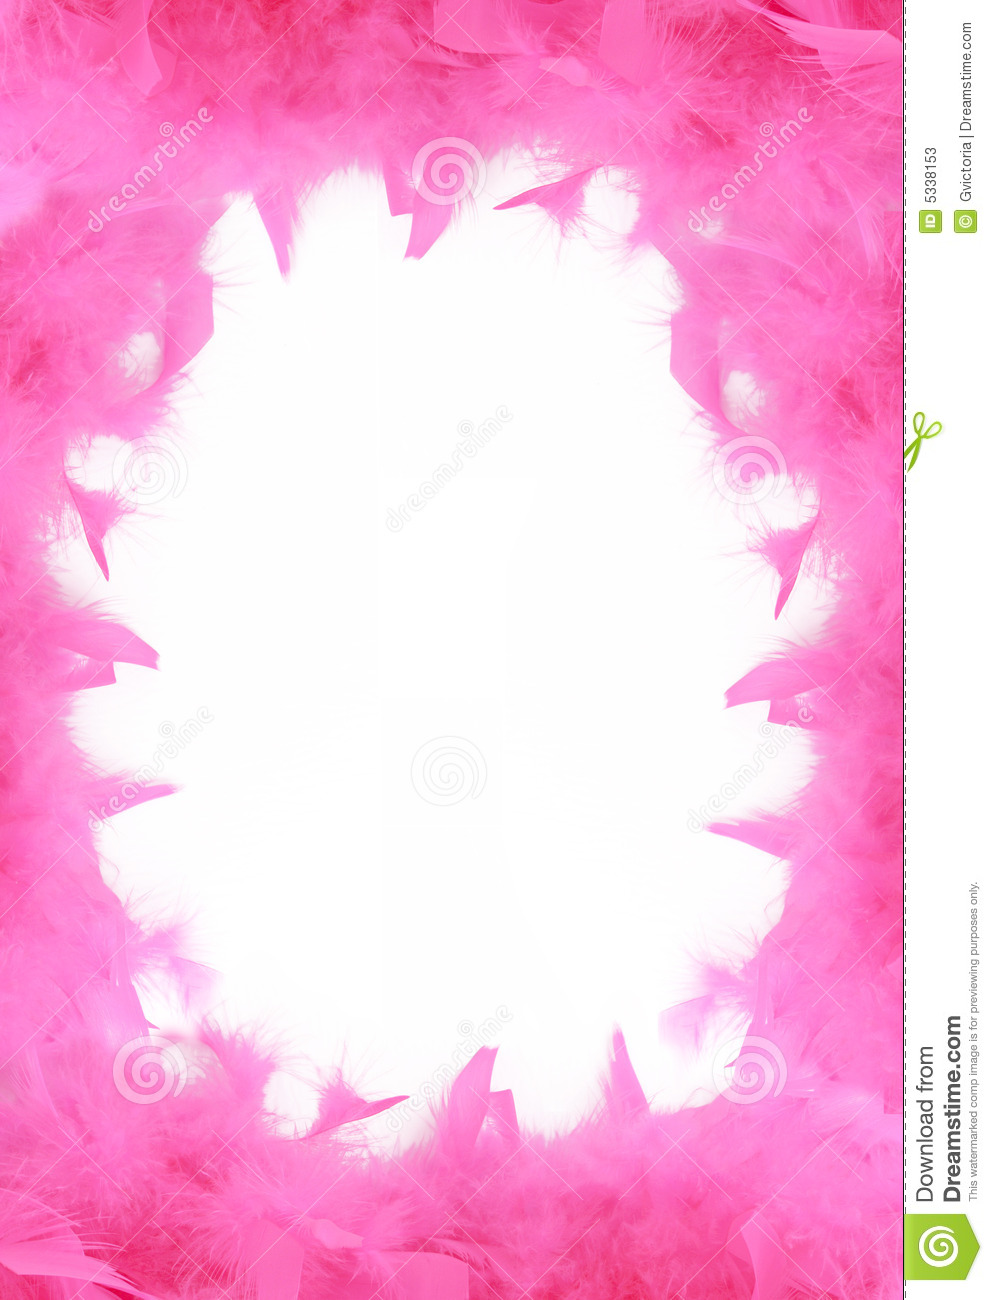 Glamorous Pink Feather Boa Border Or Background